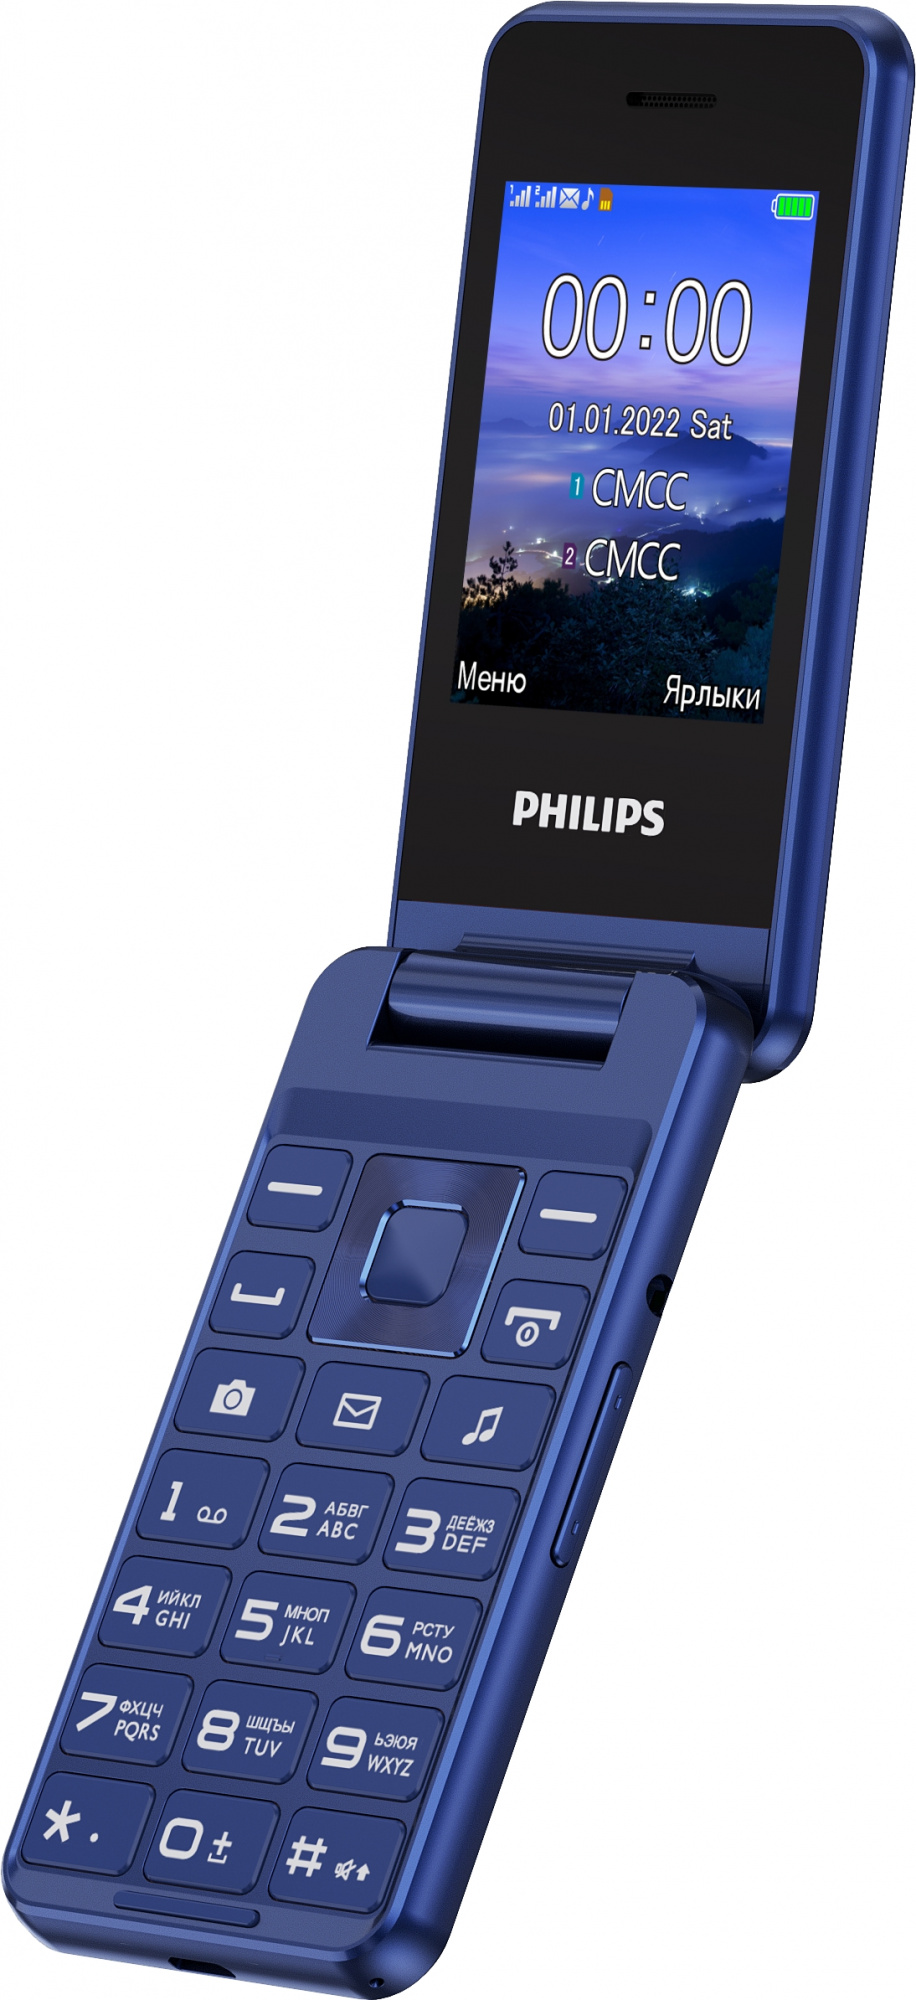 Филипс е2601. Philips Xenium e2601. Мобильный телефон Philips Xenium e2601. Мобильный телефон Philips Xenium e2601 Dark Grey. Philips Xenium e580.